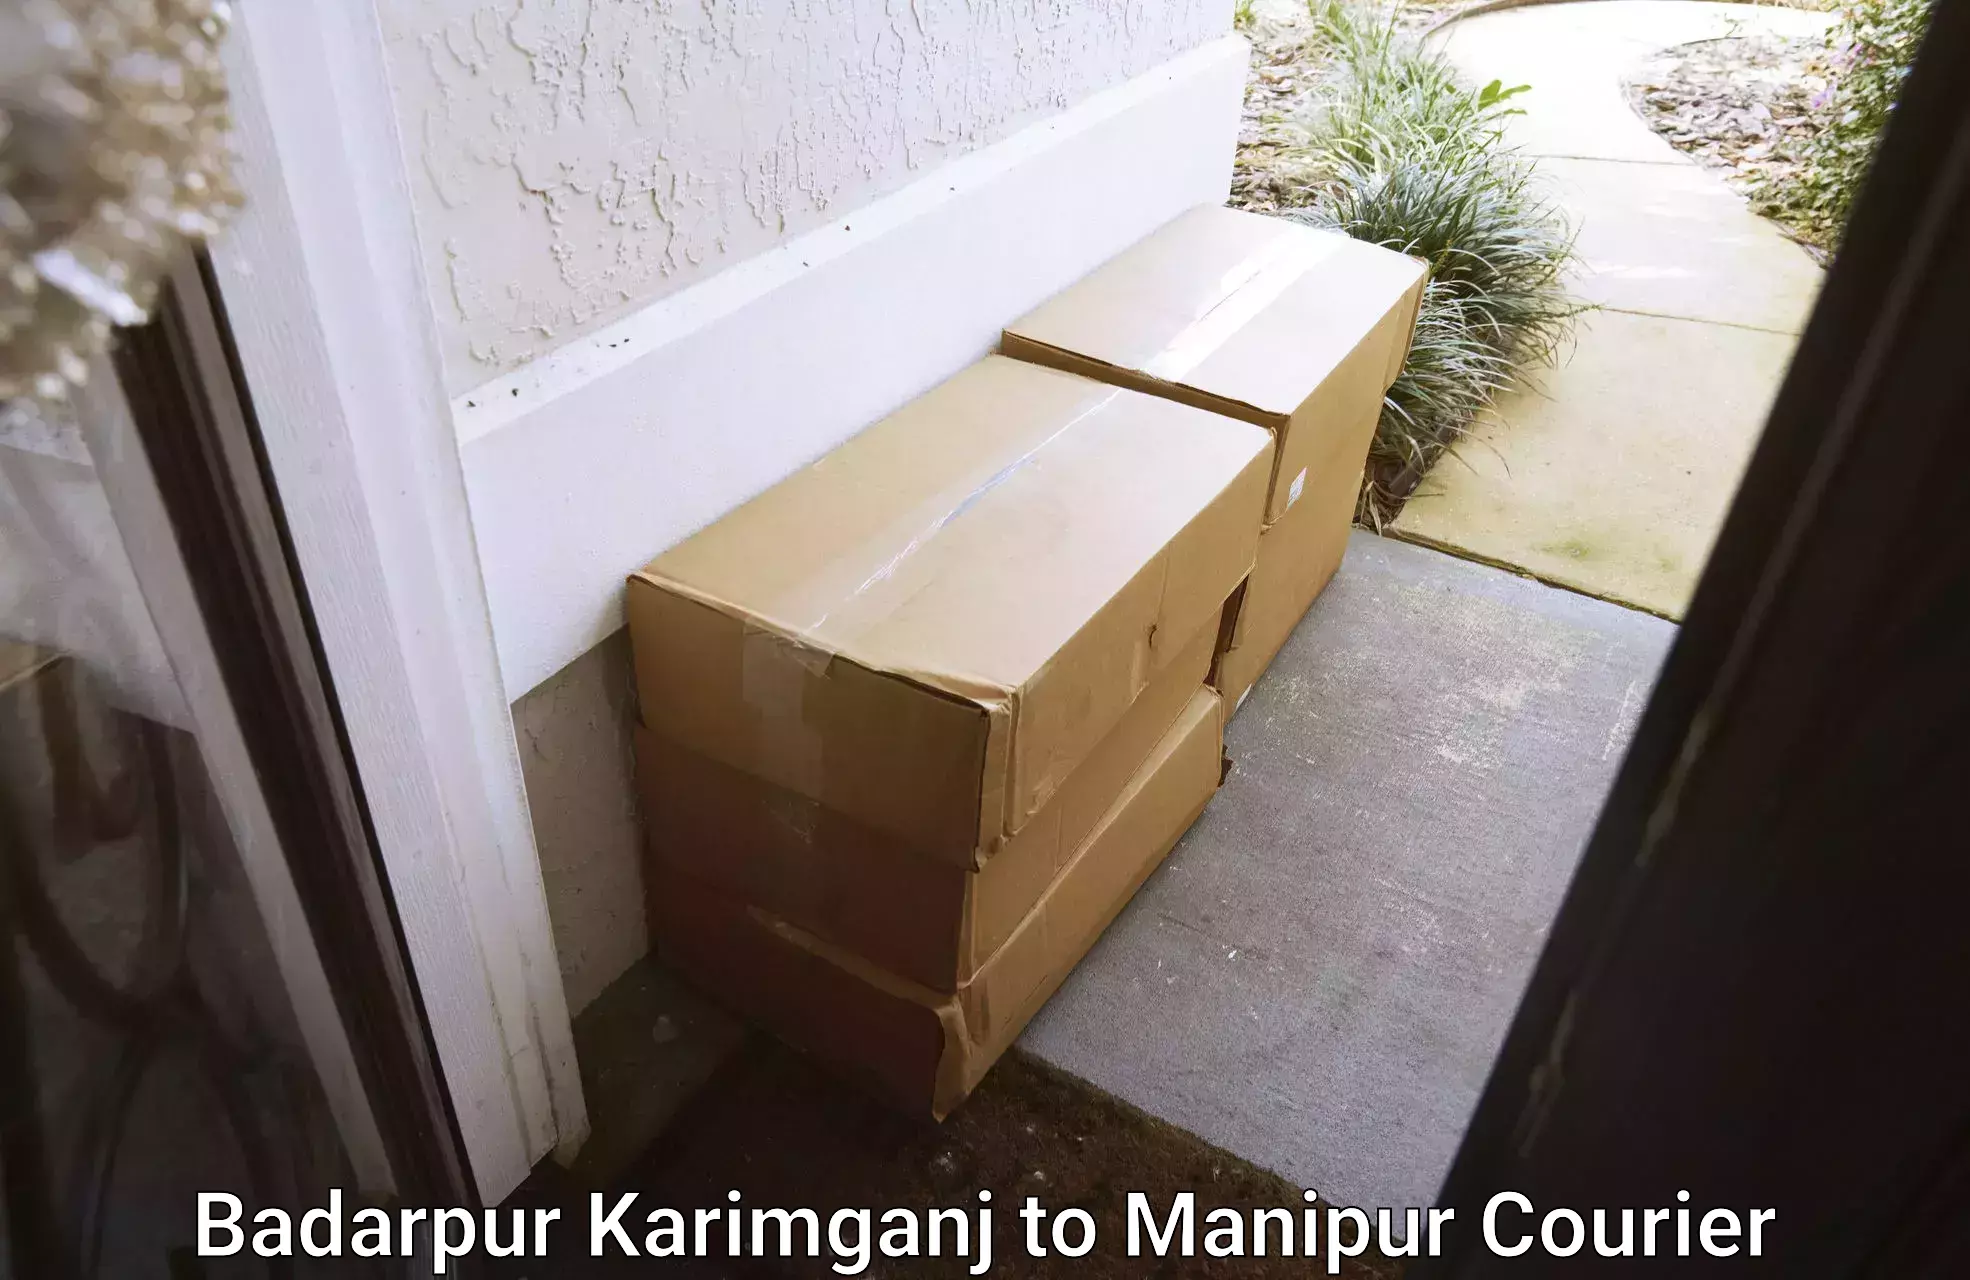 Doorstep delivery service Badarpur Karimganj to Senapati